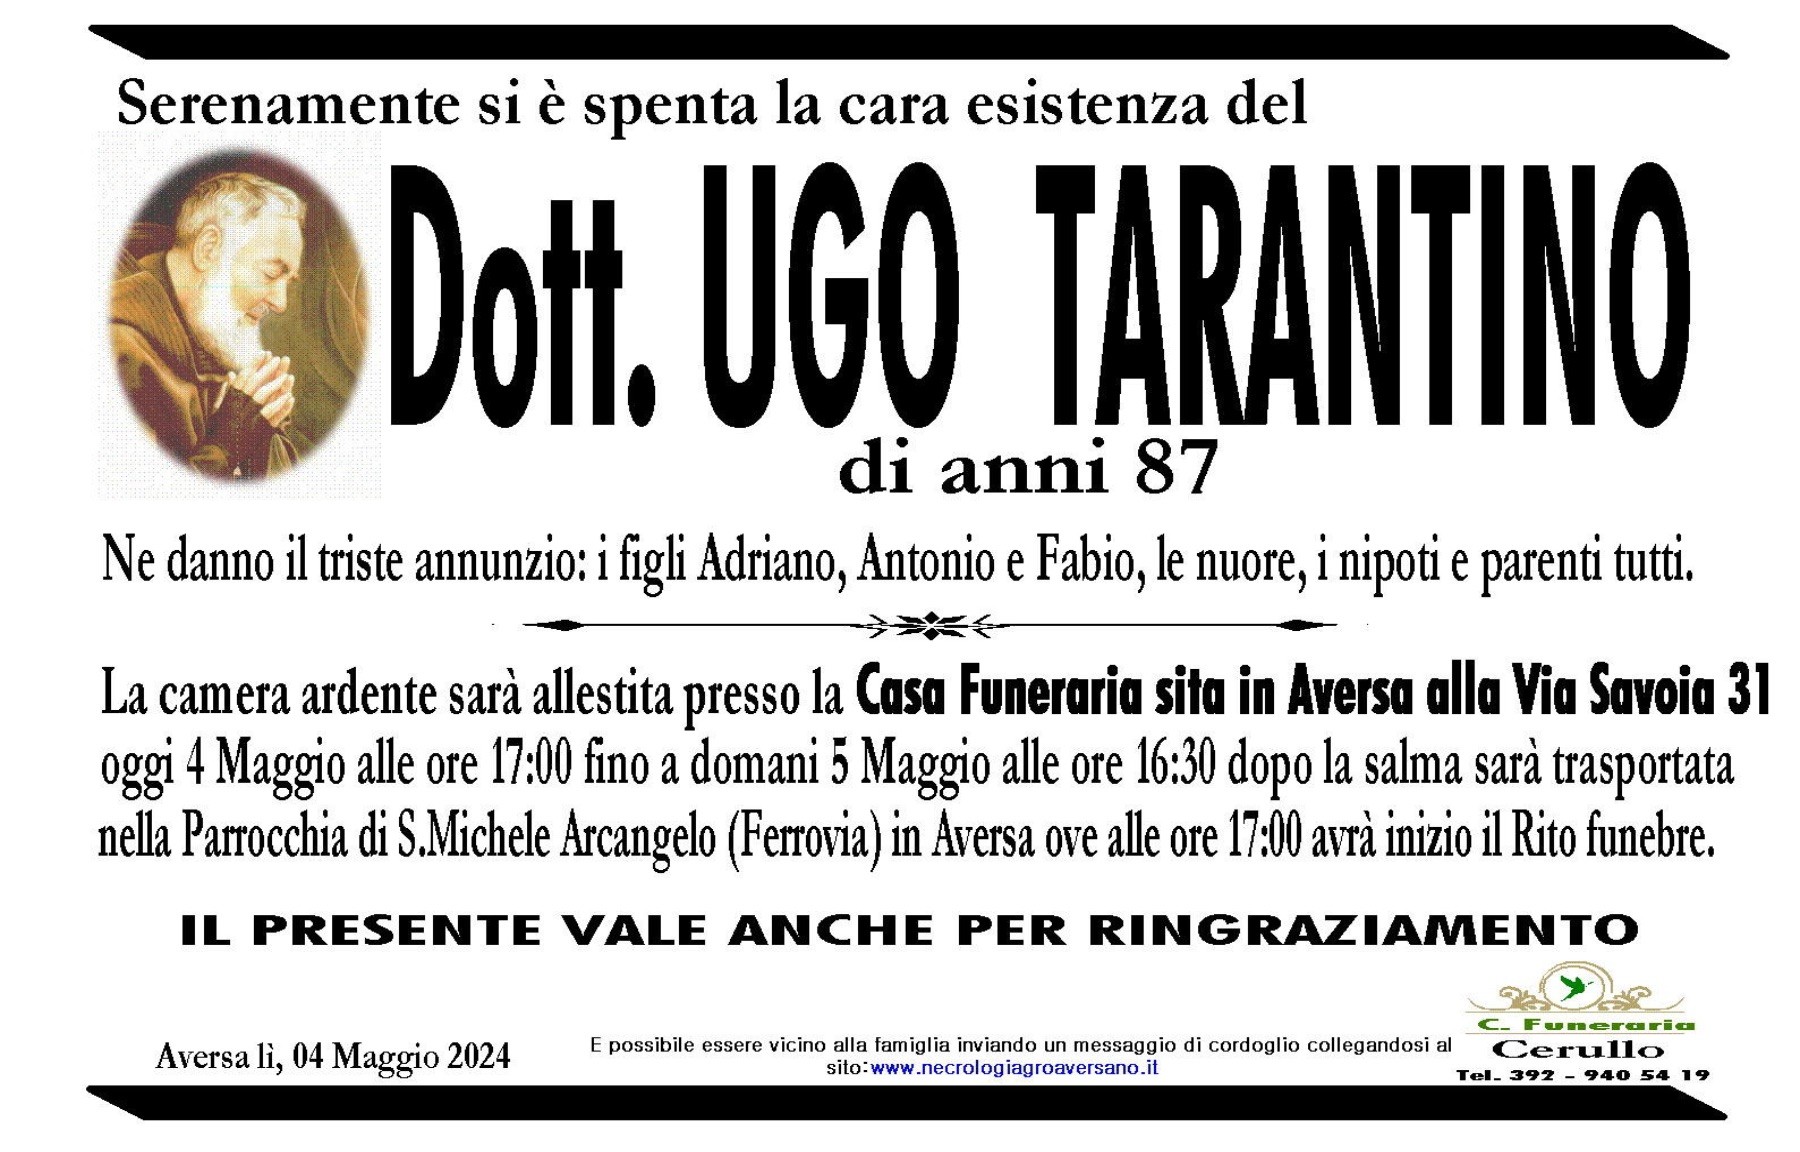 Dott. Ugo Tarantino